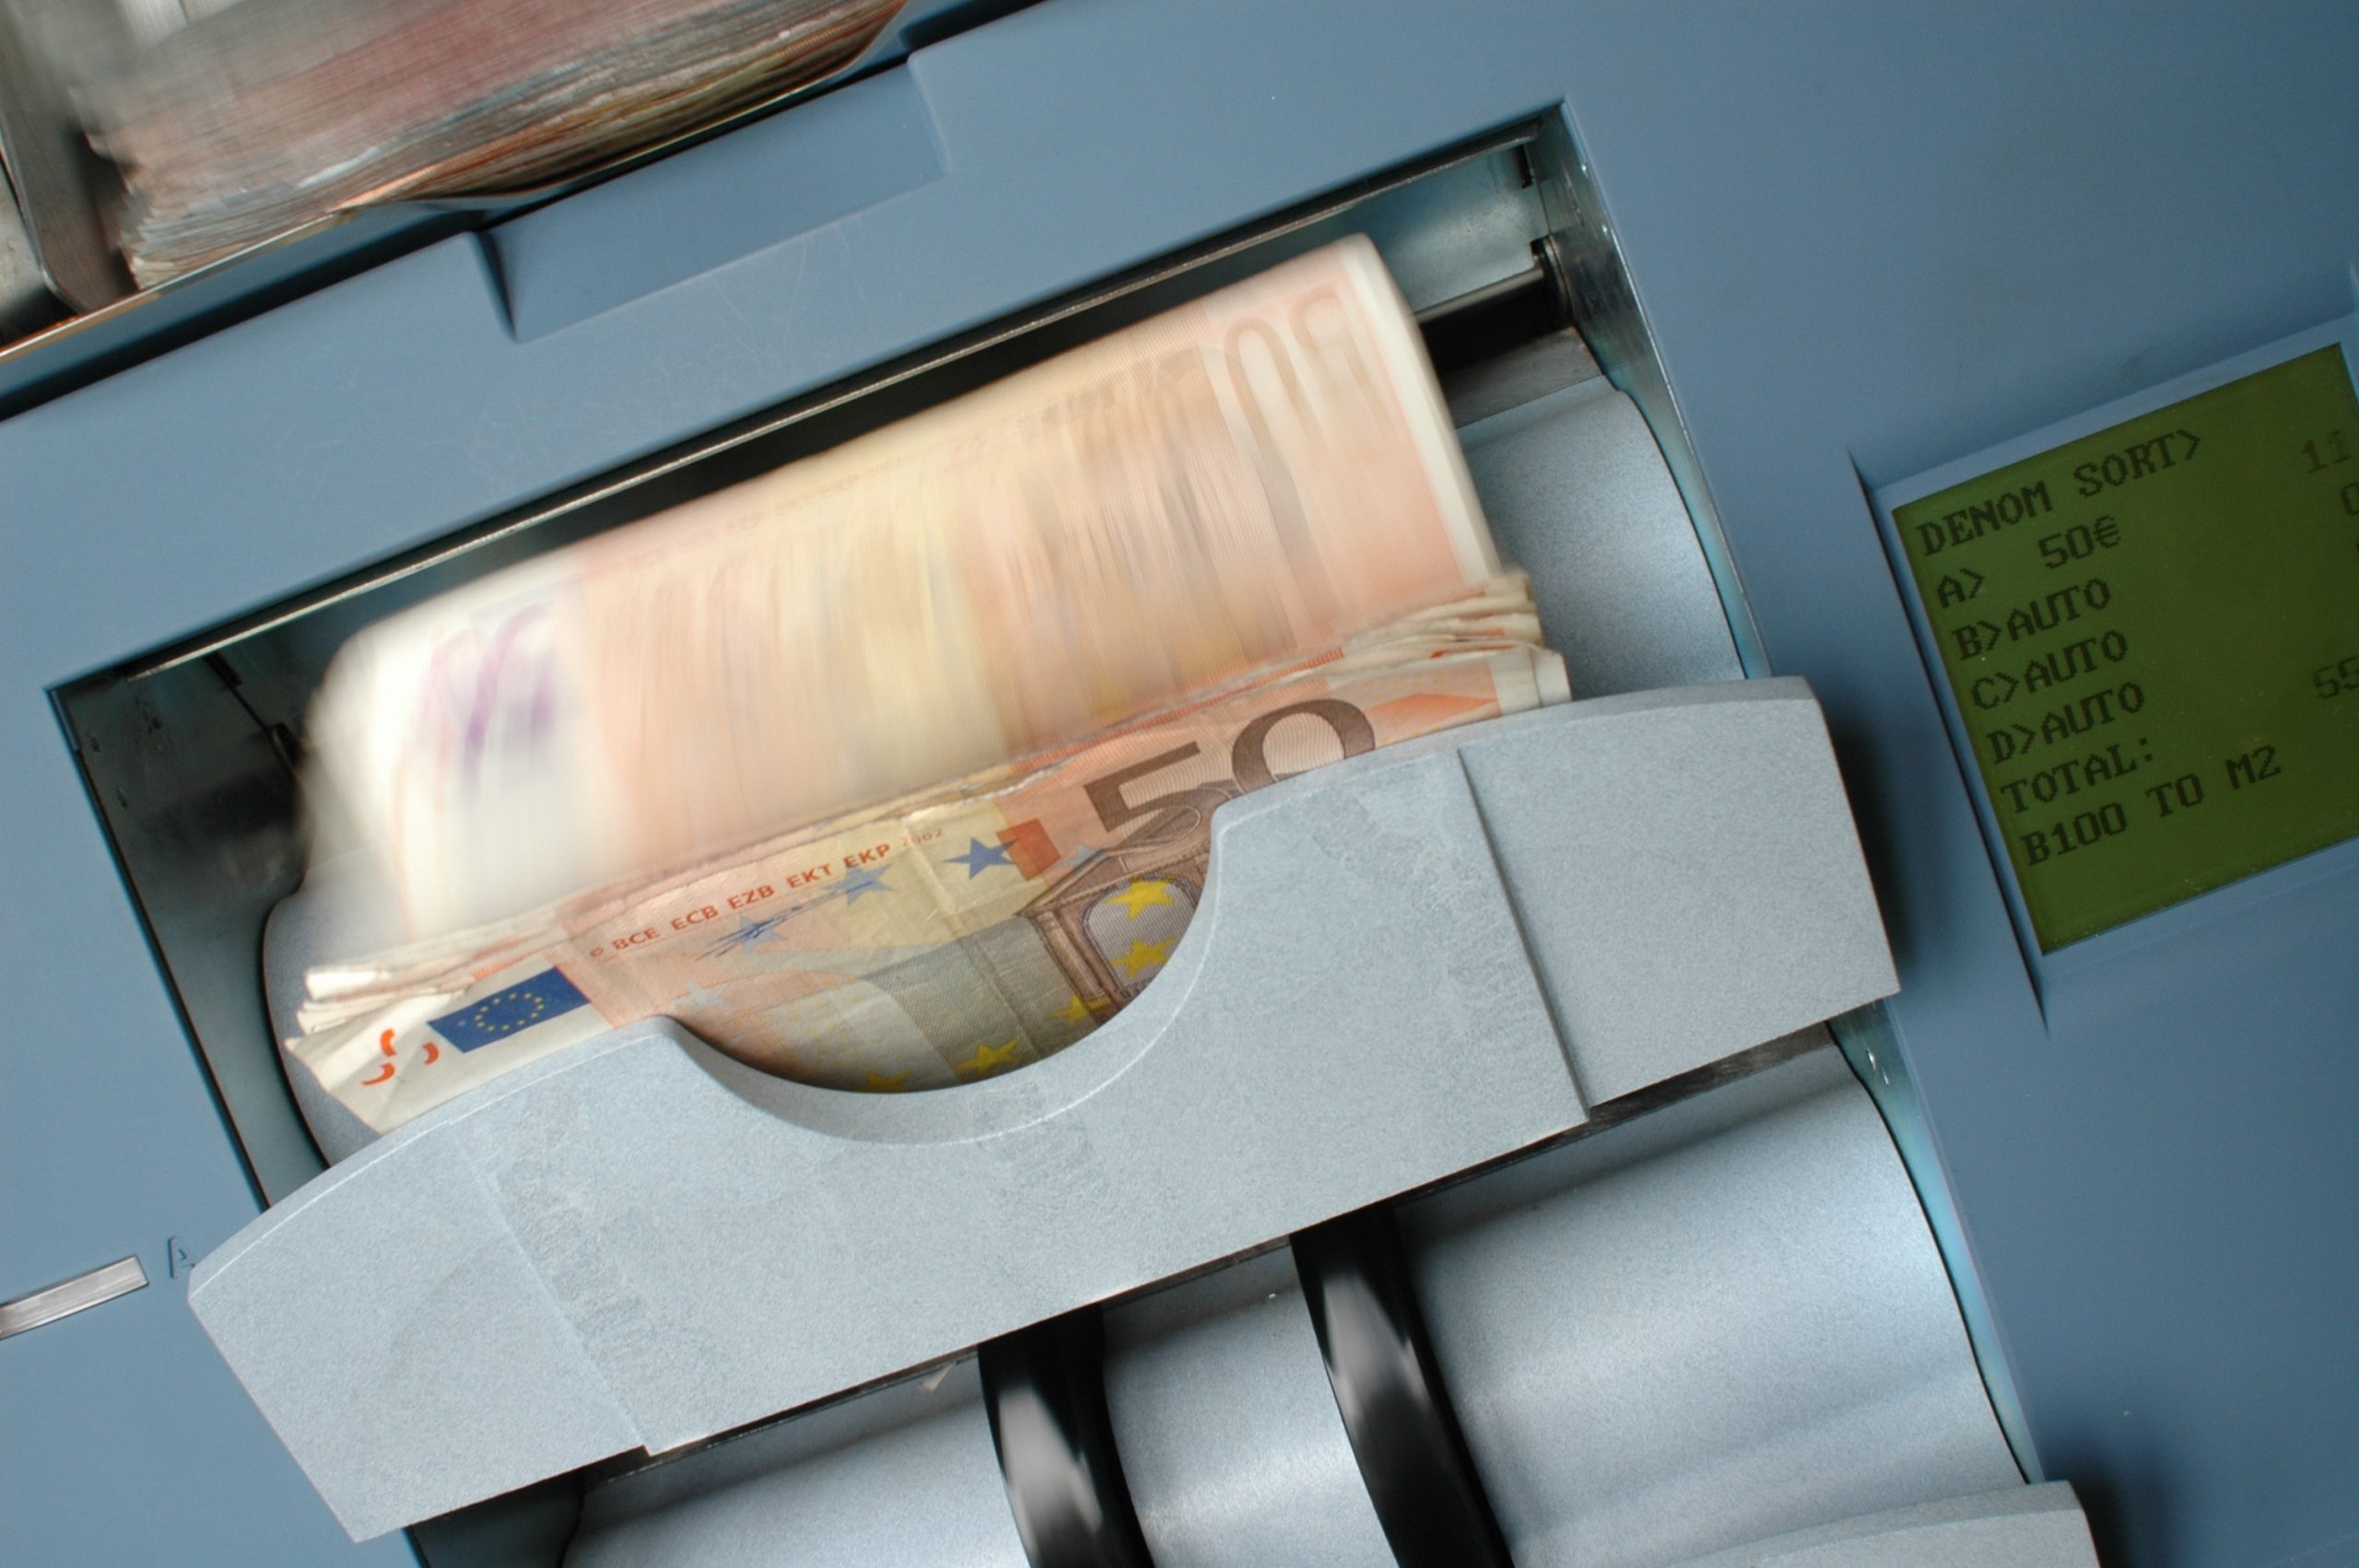 Auf dem Bild ist eine Geldzählmaschine zusehen und soll symbolisch für das Thema des Artikels stehen "schnell 50000 euro verdienen"